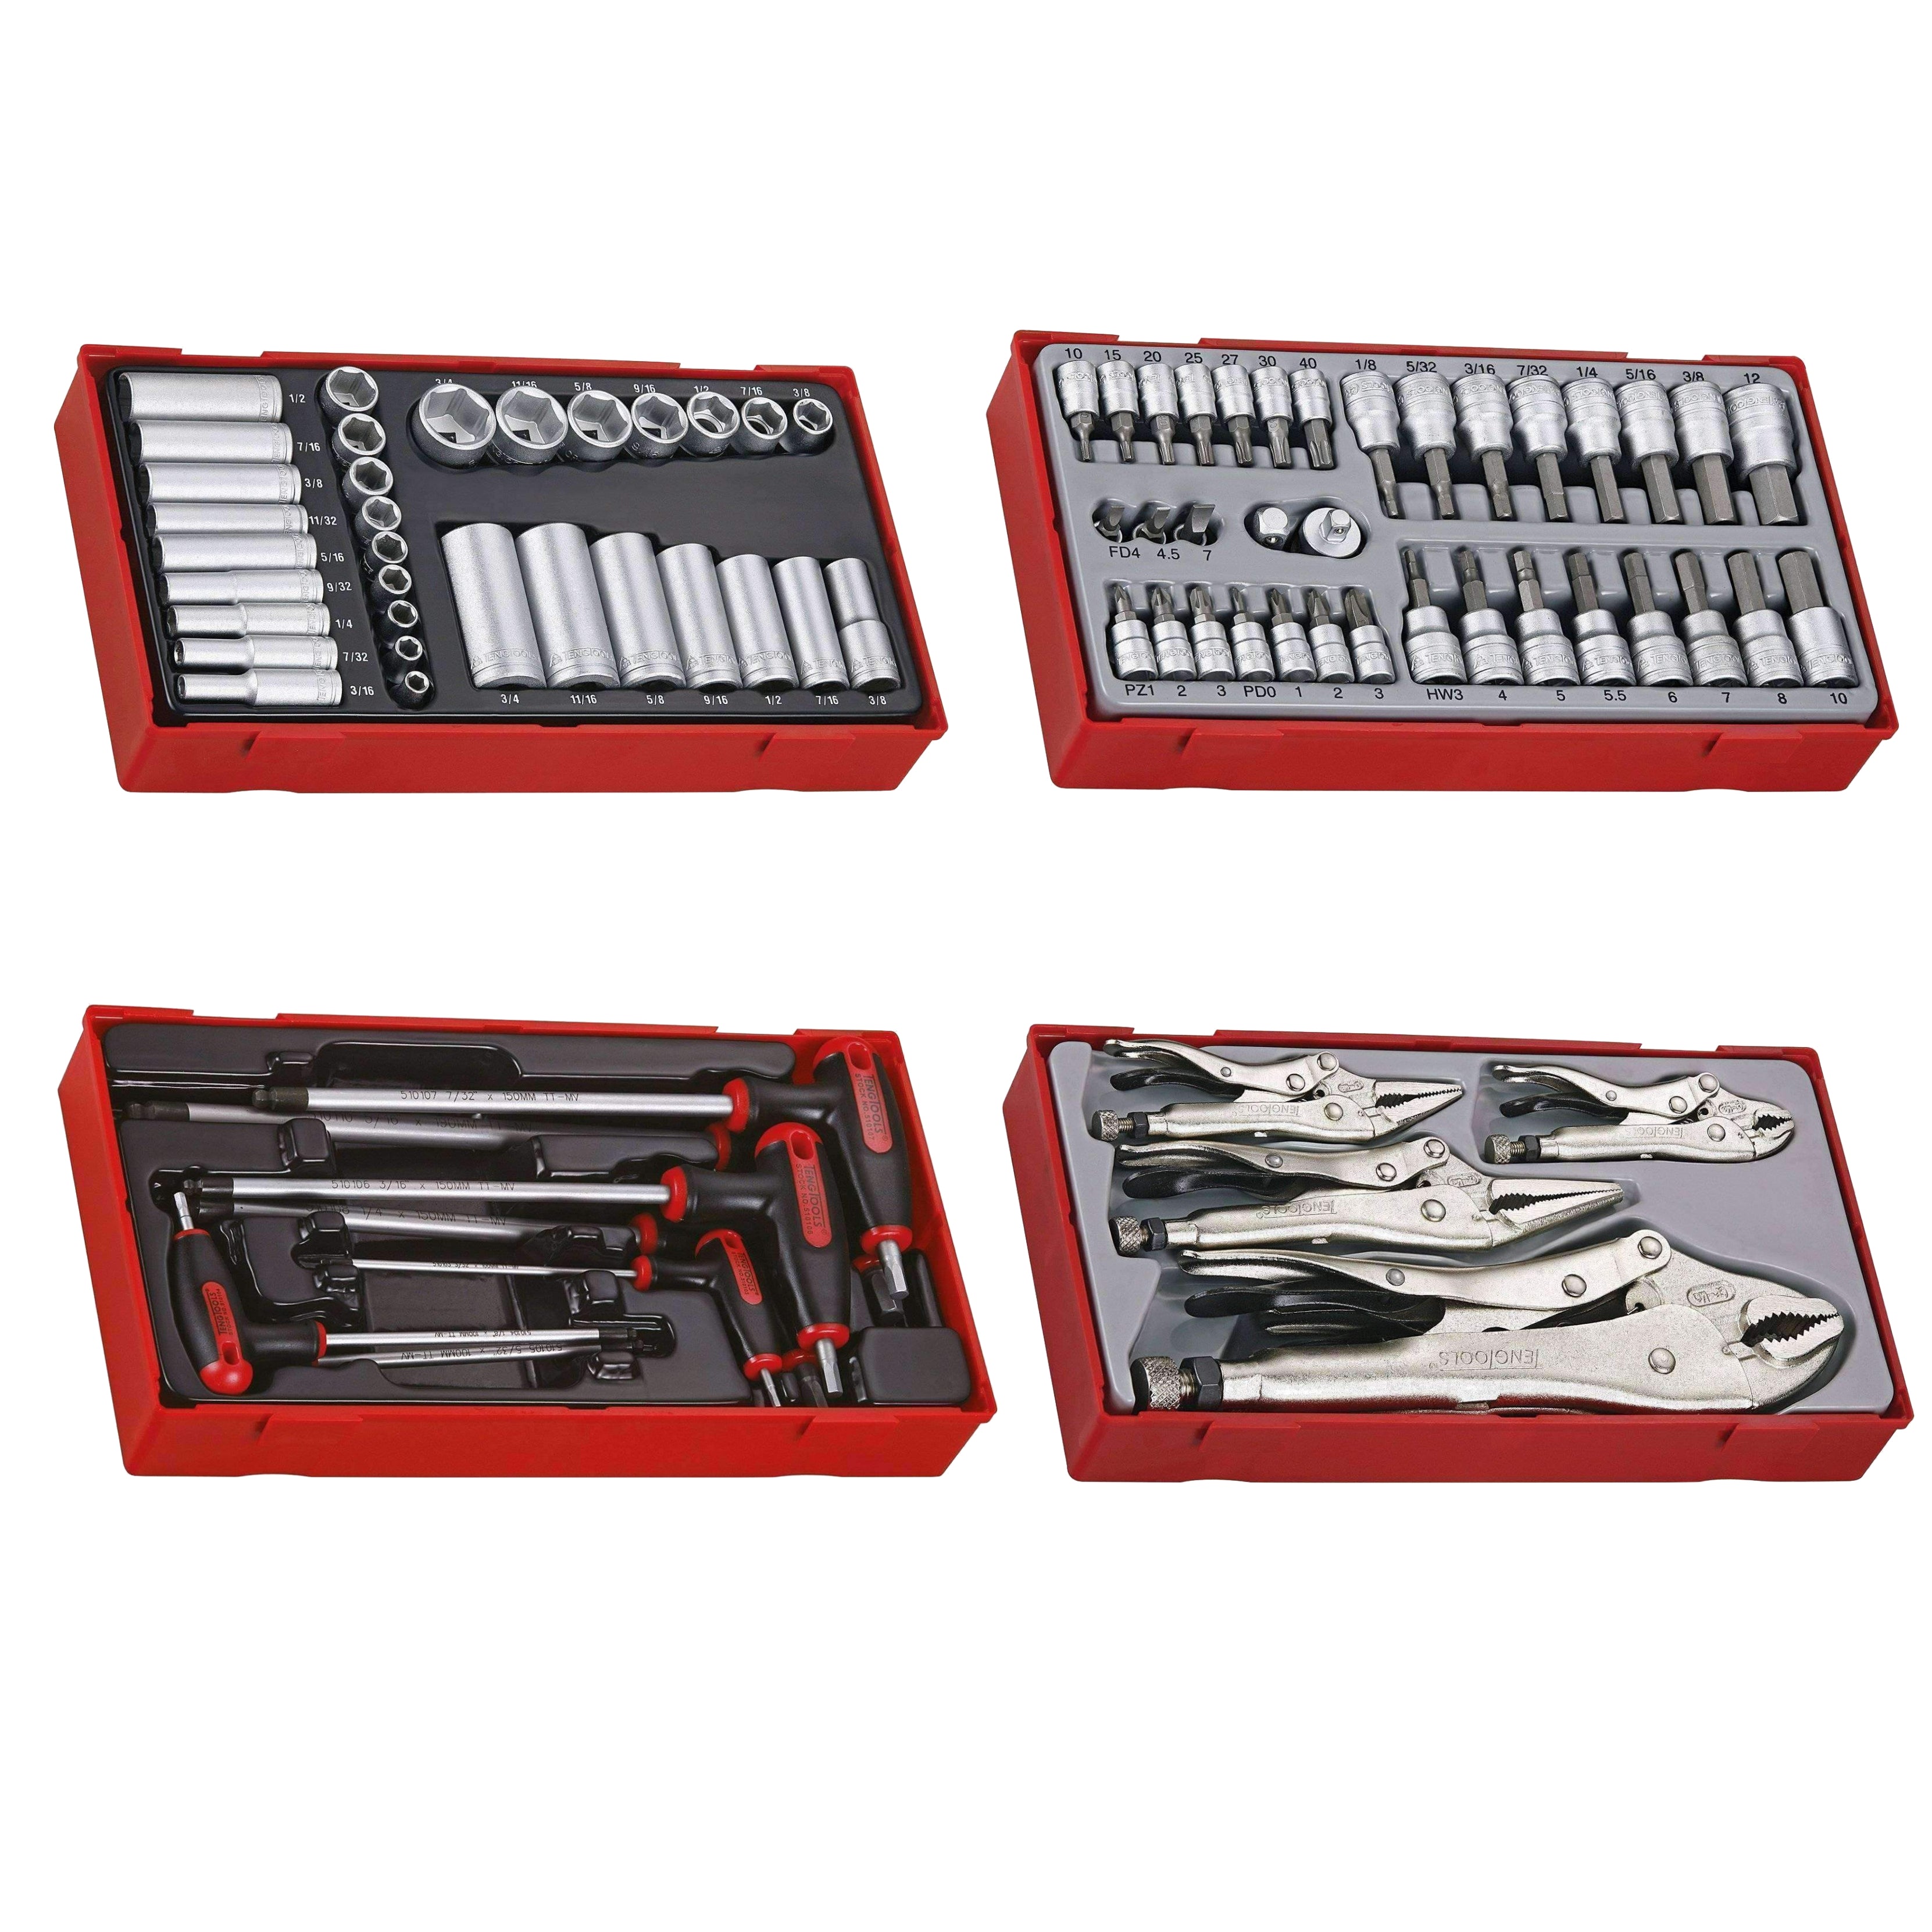 Teng Tools 184 Piece Complete Mixed Service Tool Kit With Black USA Tool Box - TC806NBK-USA1